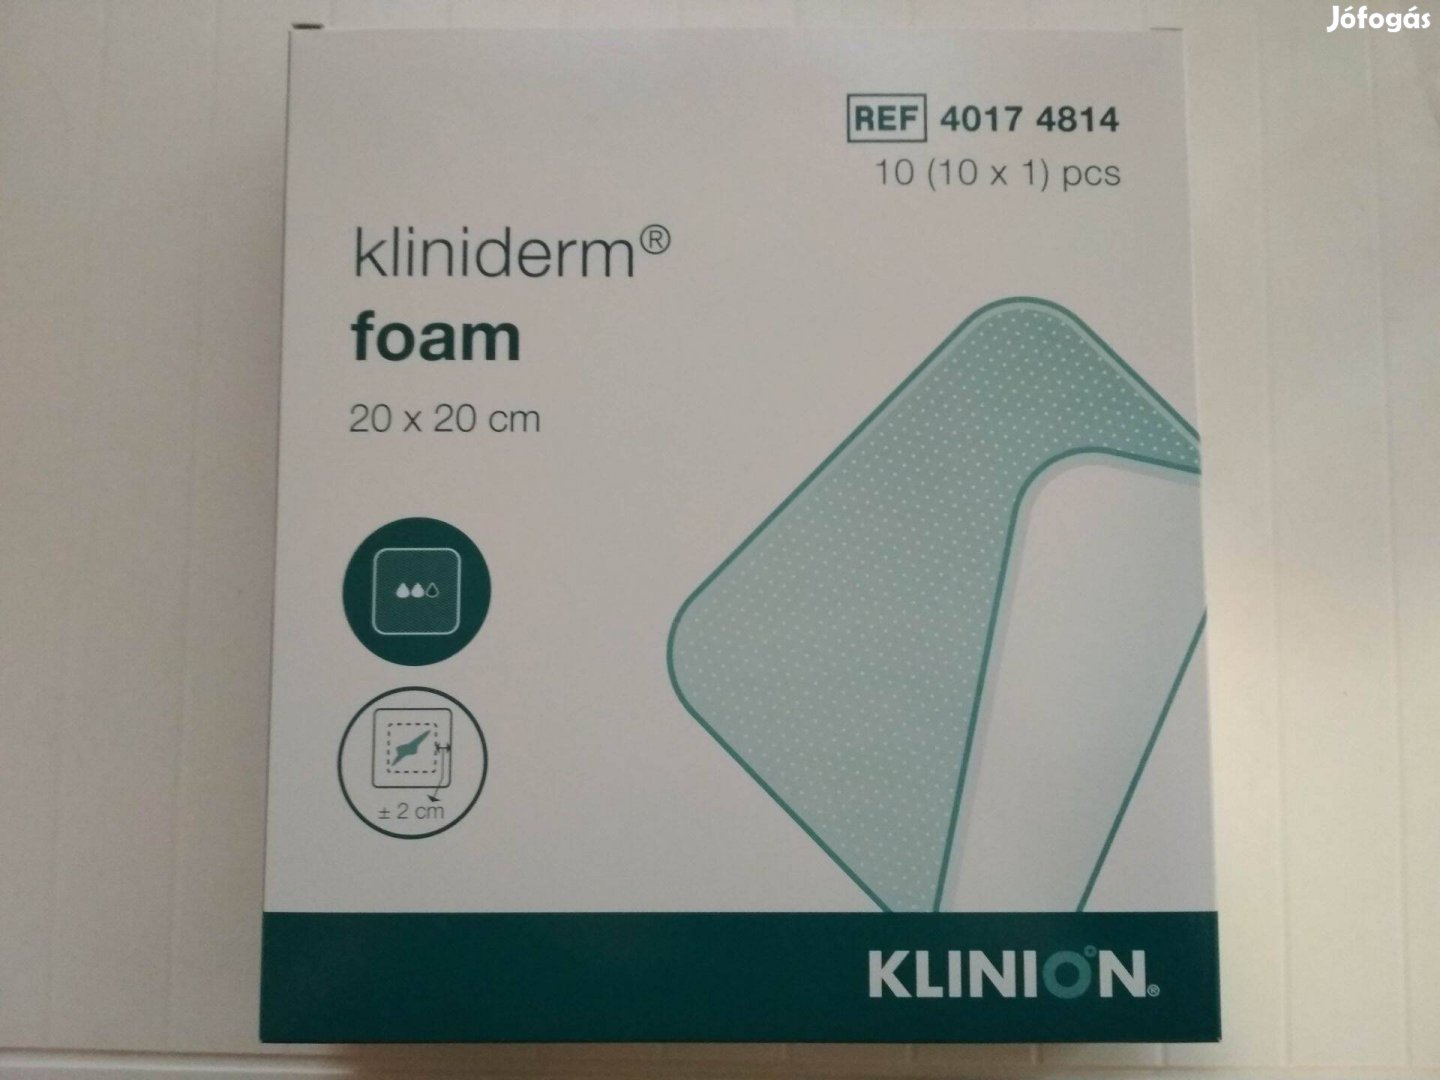 Kliniderm Foam 20x20cm habkötszer, kötszer 10 db van egy csomagban